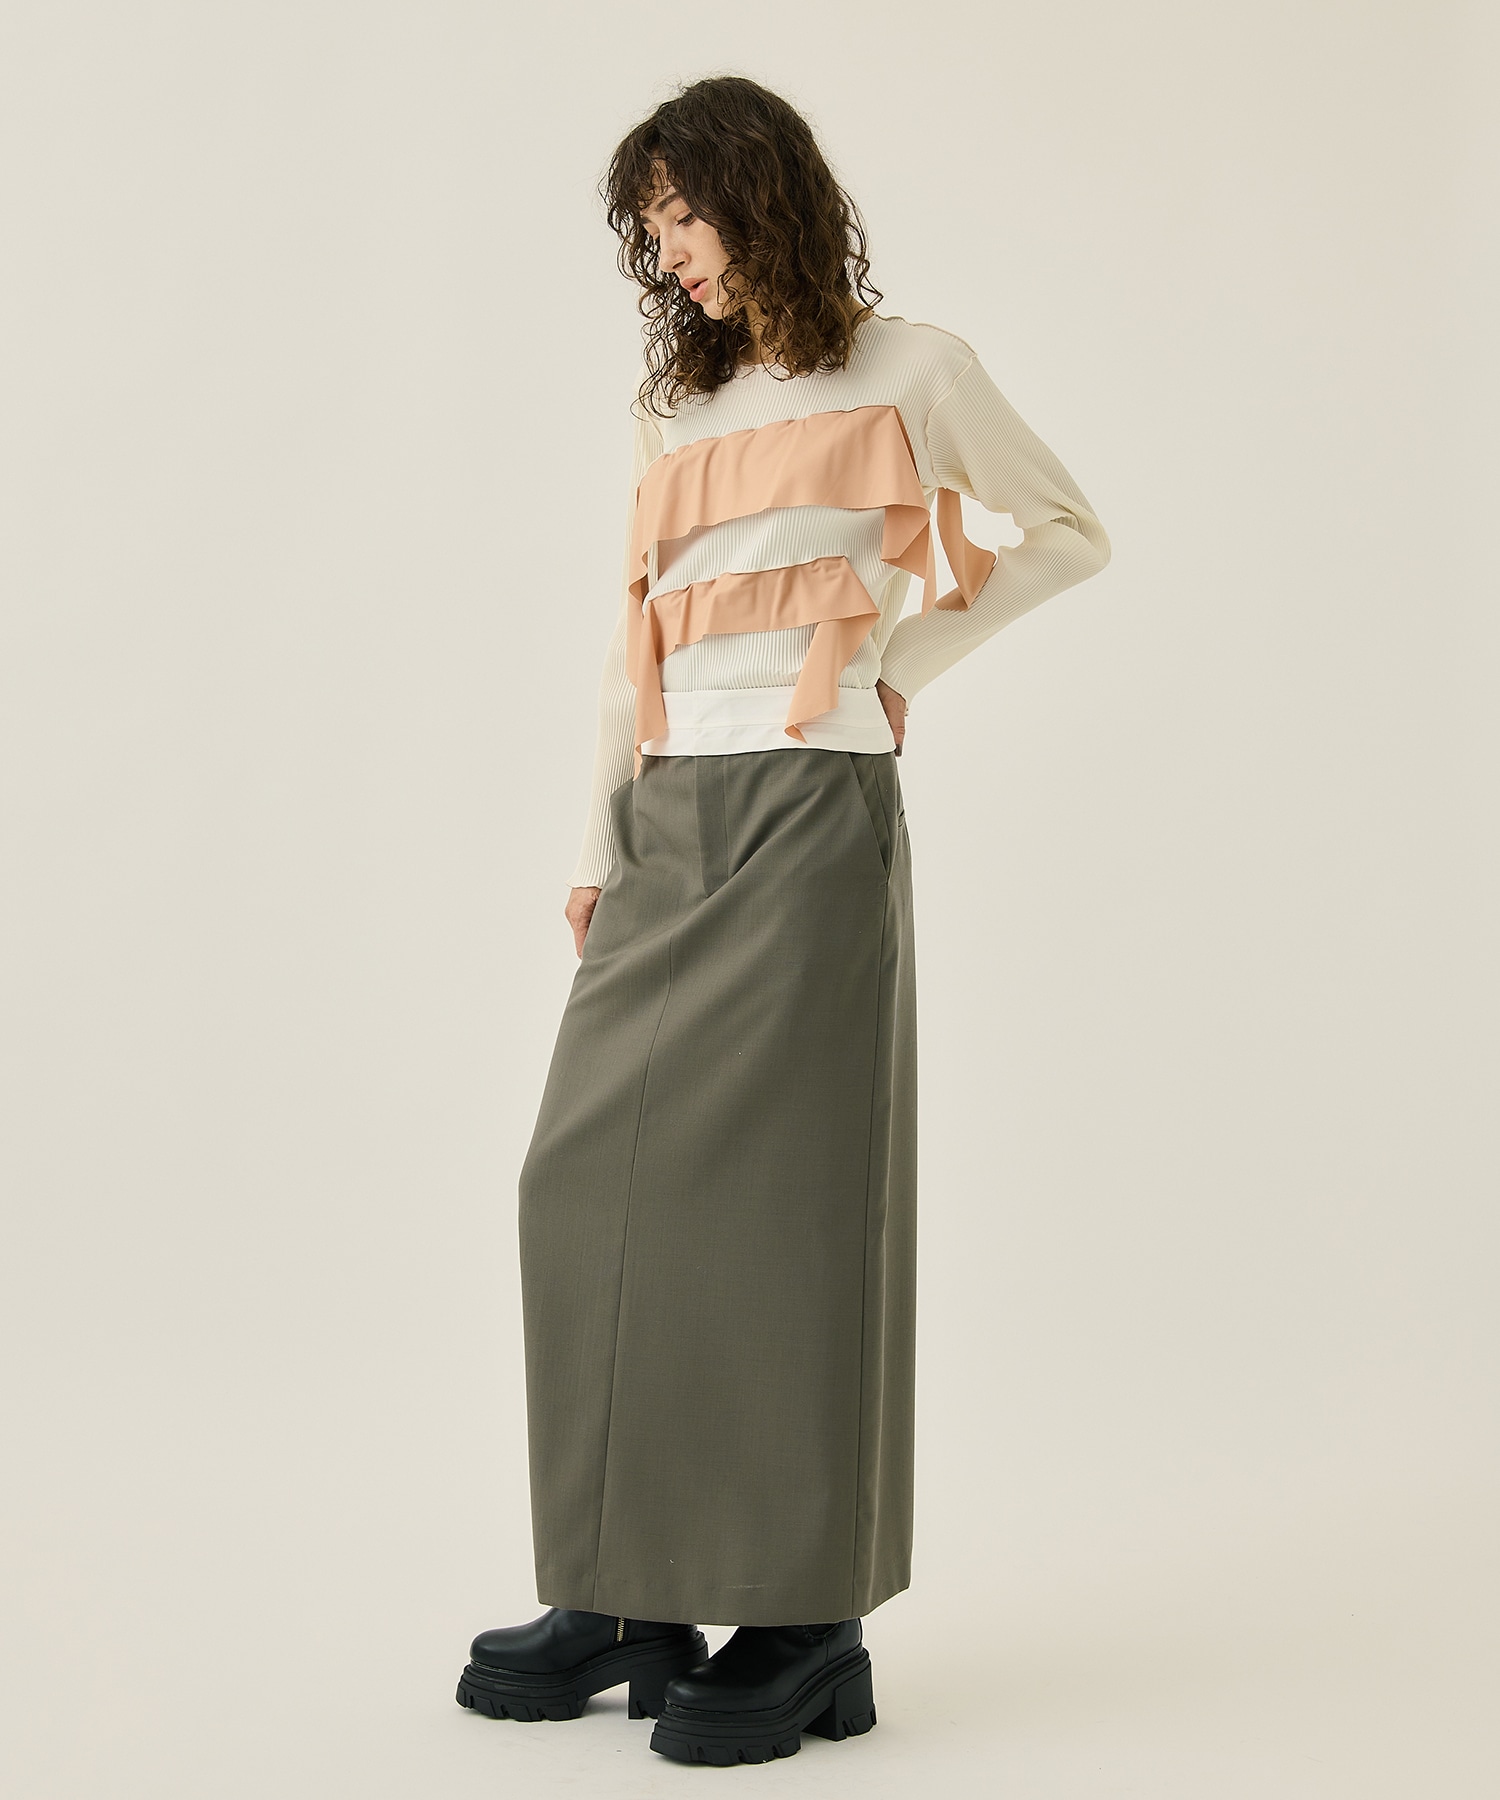 新作お買い得 STUDIOUS kotohayokozawa 2way skirtの通販 by 小籠包's shop｜ステュディオスならラクマ 